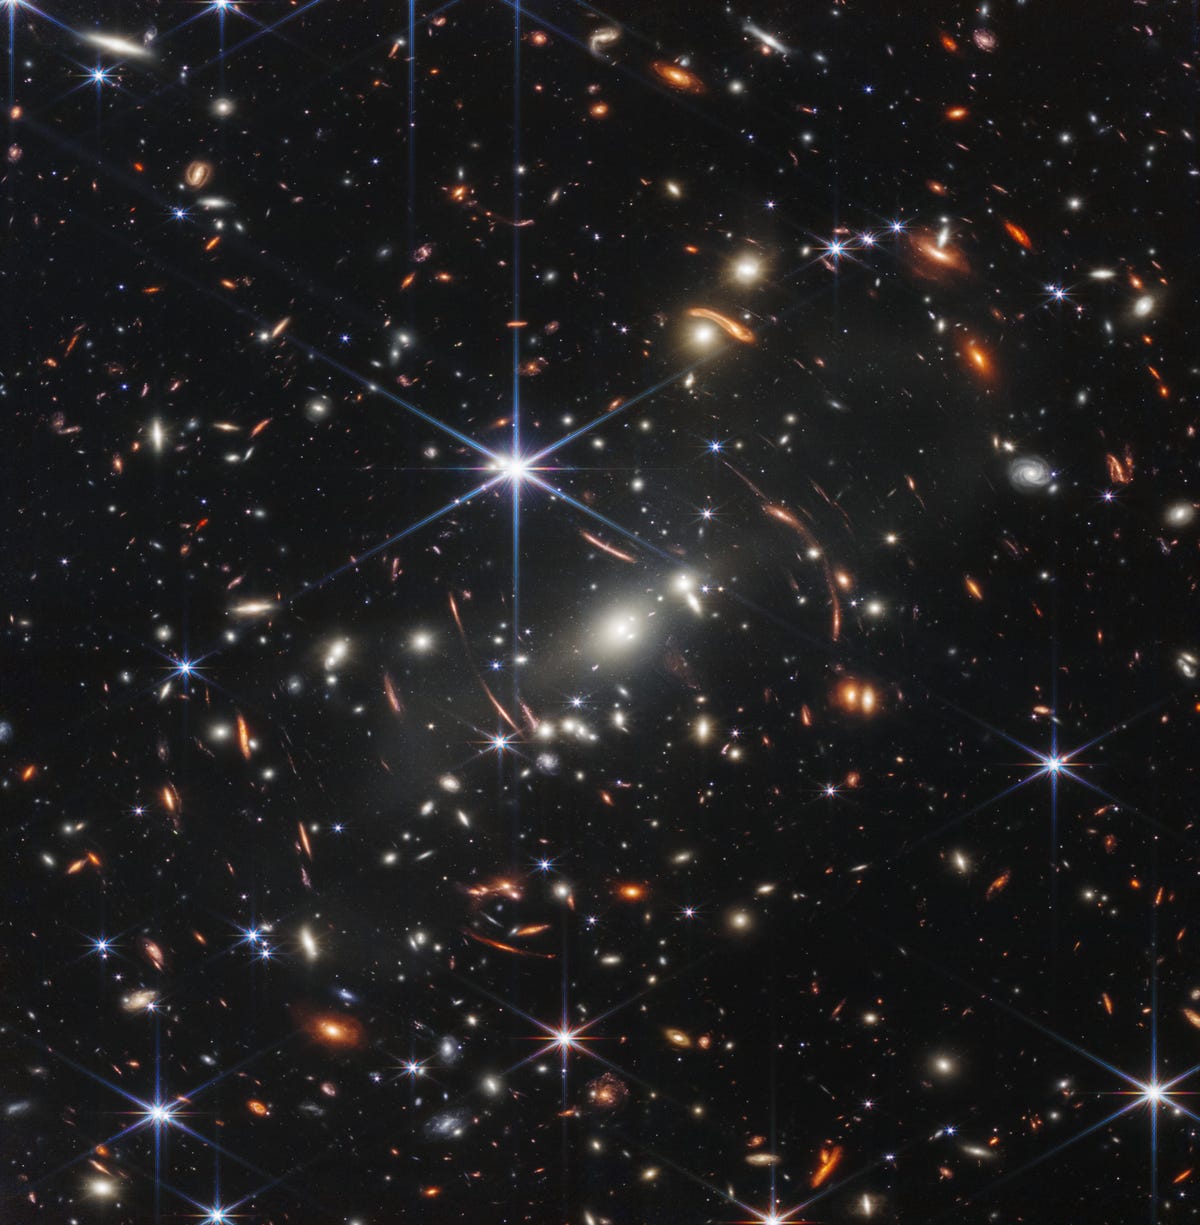 Območje tisočerih galaksij proti temi vesolja z veliko osrednjo šesterokrako modro zvezdo.